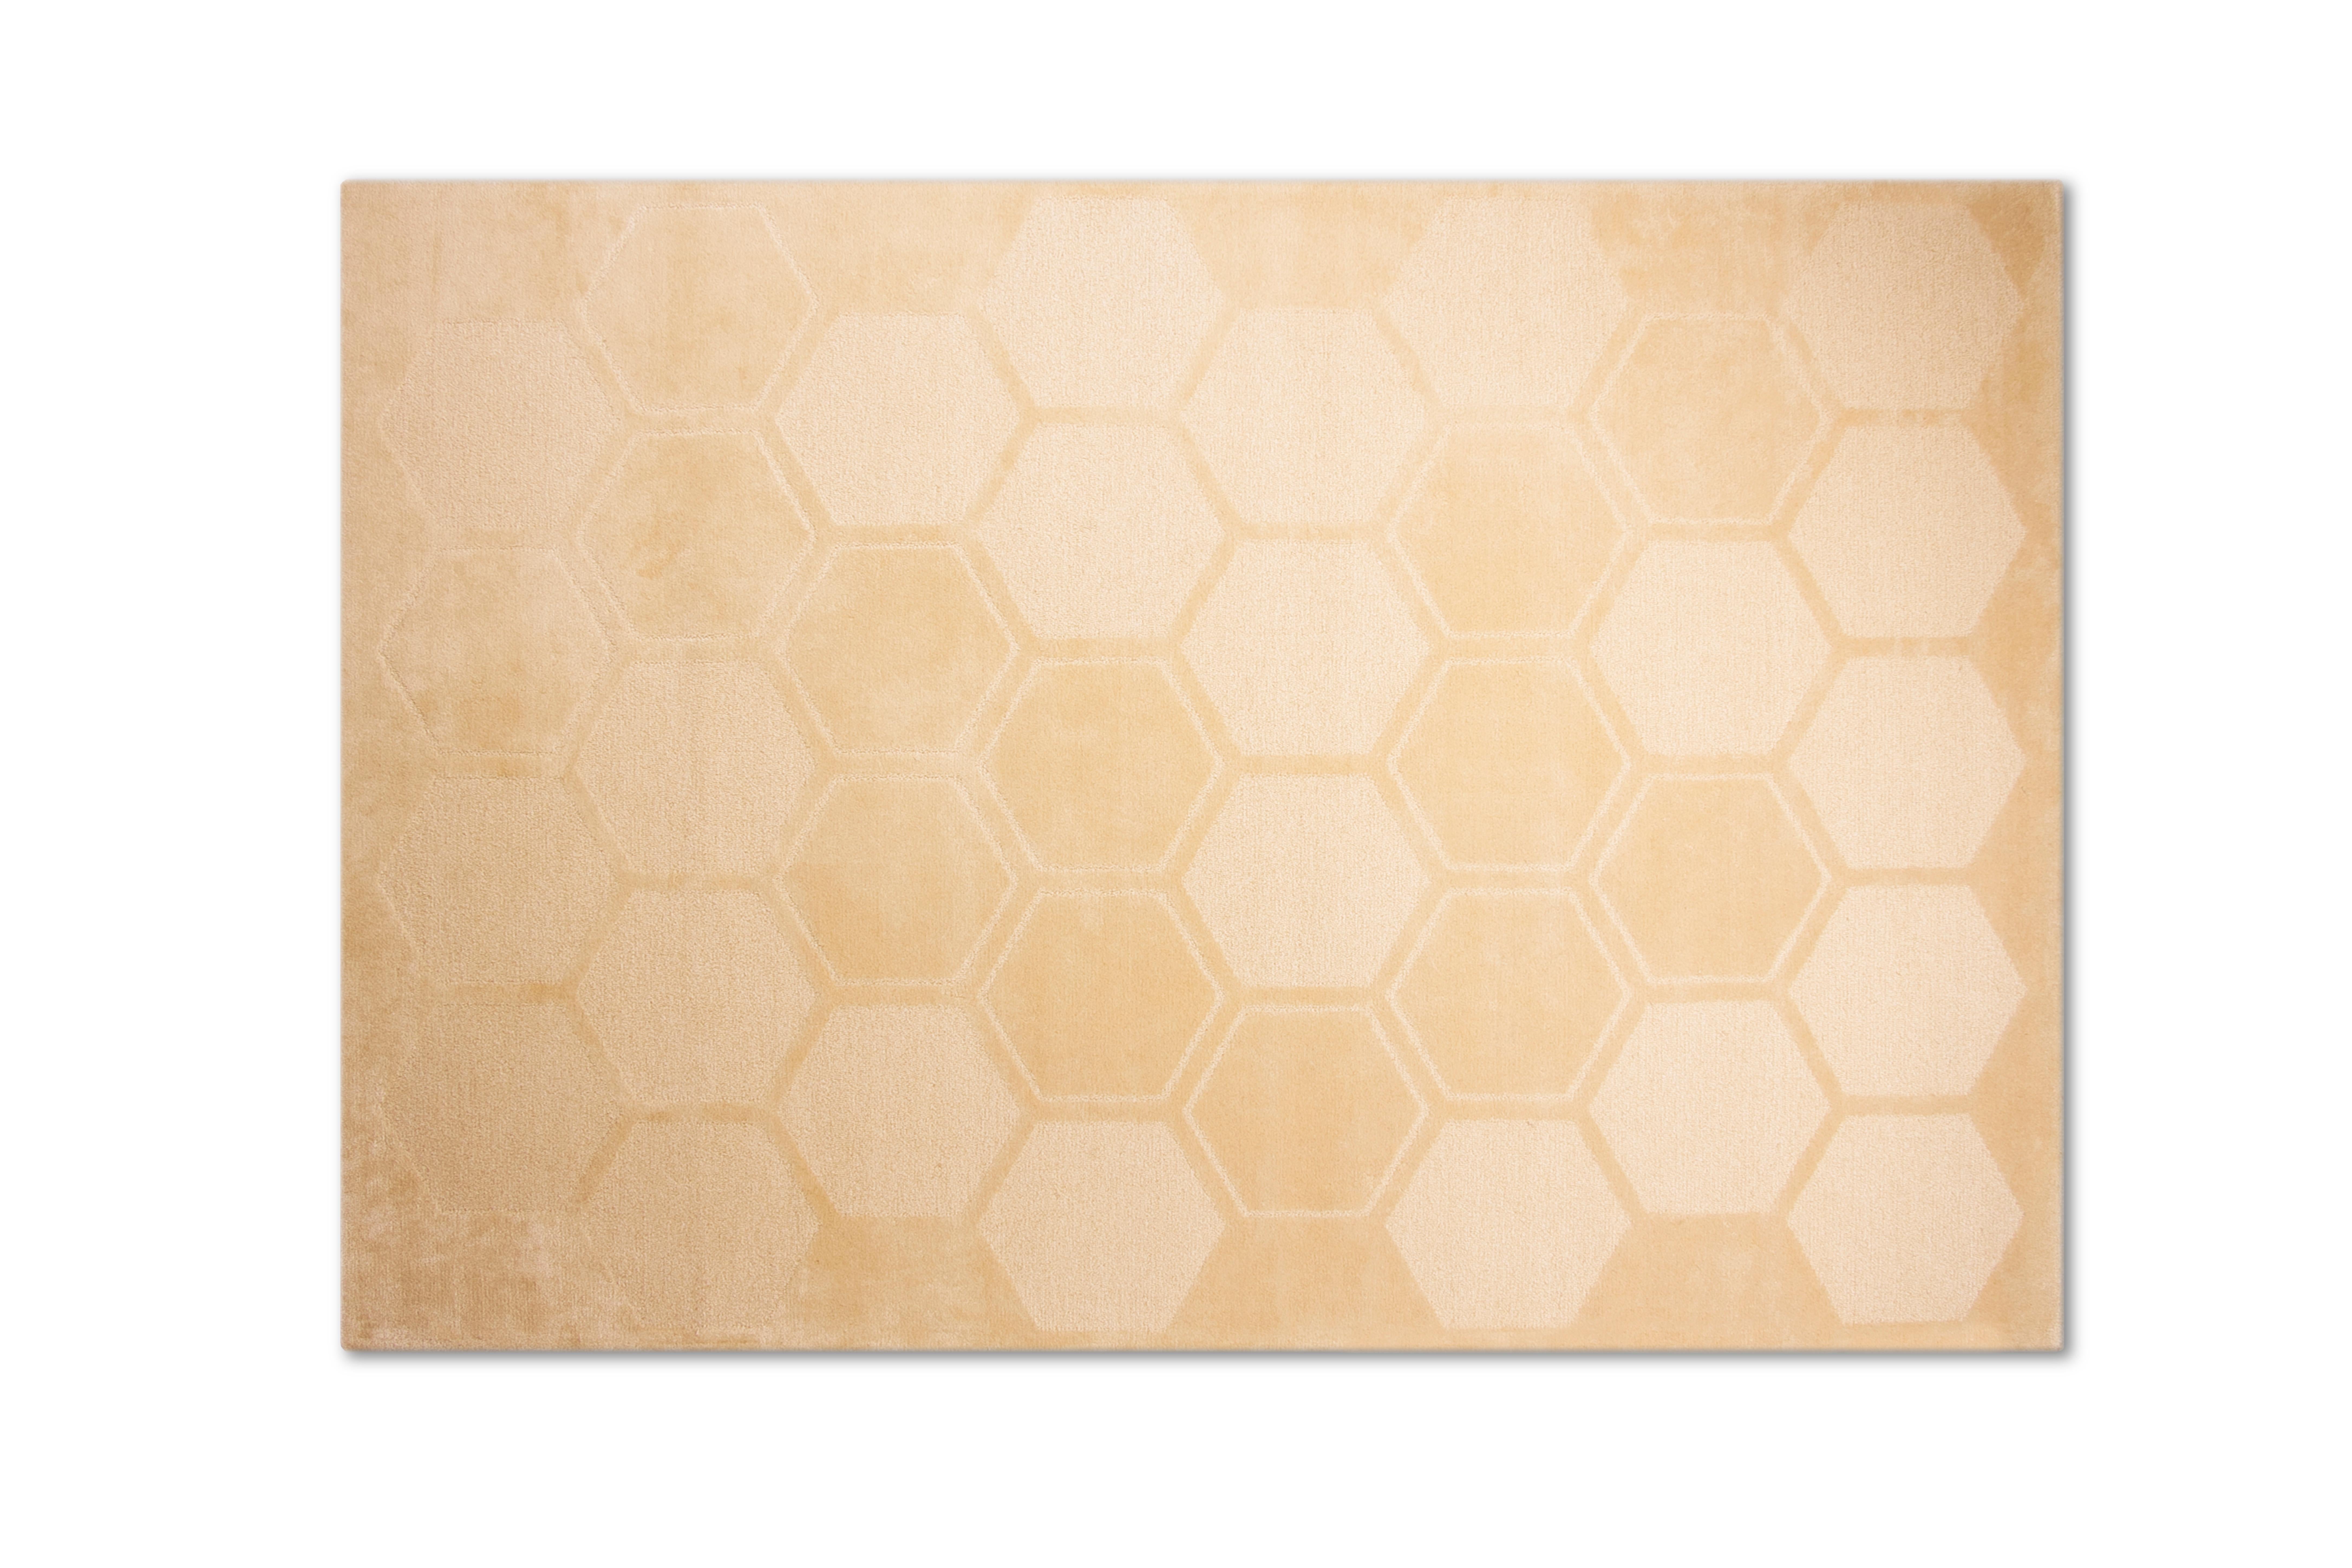 Wabenteppich von Royal Stranger

Abmaße: 350 x 240 x 1,5 cm
MATERIALIEN: Wolle und Seide

Der Honeycomb-Teppich vervollständigt die Linie mit dem wunderschönen Wabenmuster und verleiht Ihrem Raum ein Gefühl von Komfort und Luxus.

Royal stranger ist